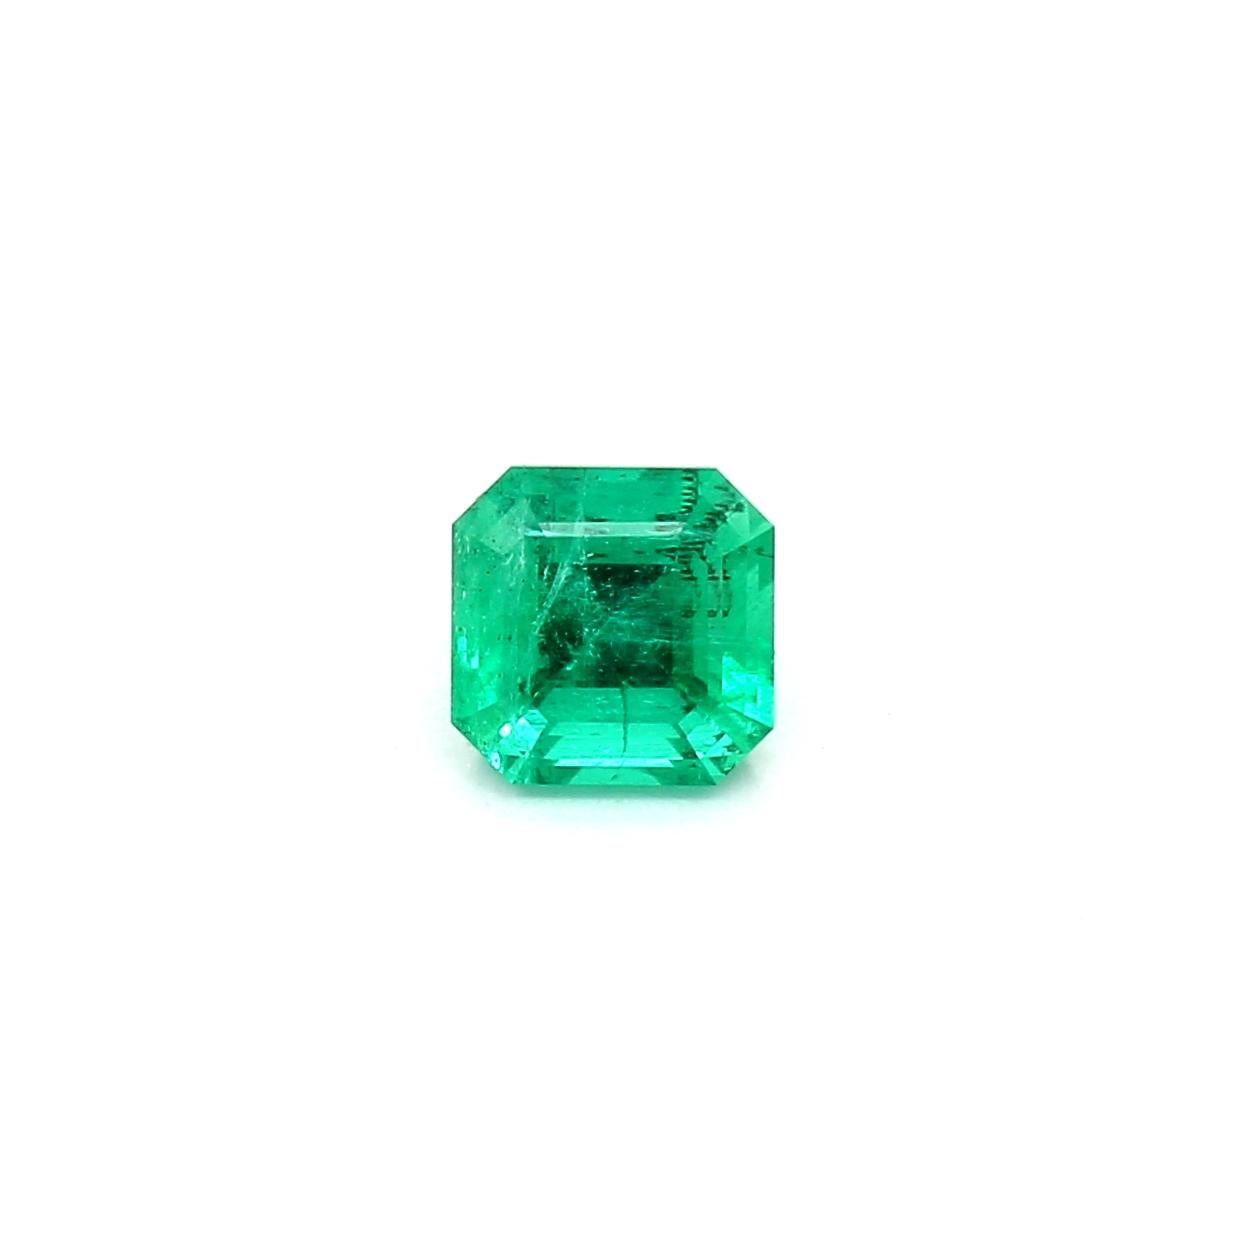 Modern Intense Green Russian Emerald Ring Gem 0.85 Carat Weight  For Sale